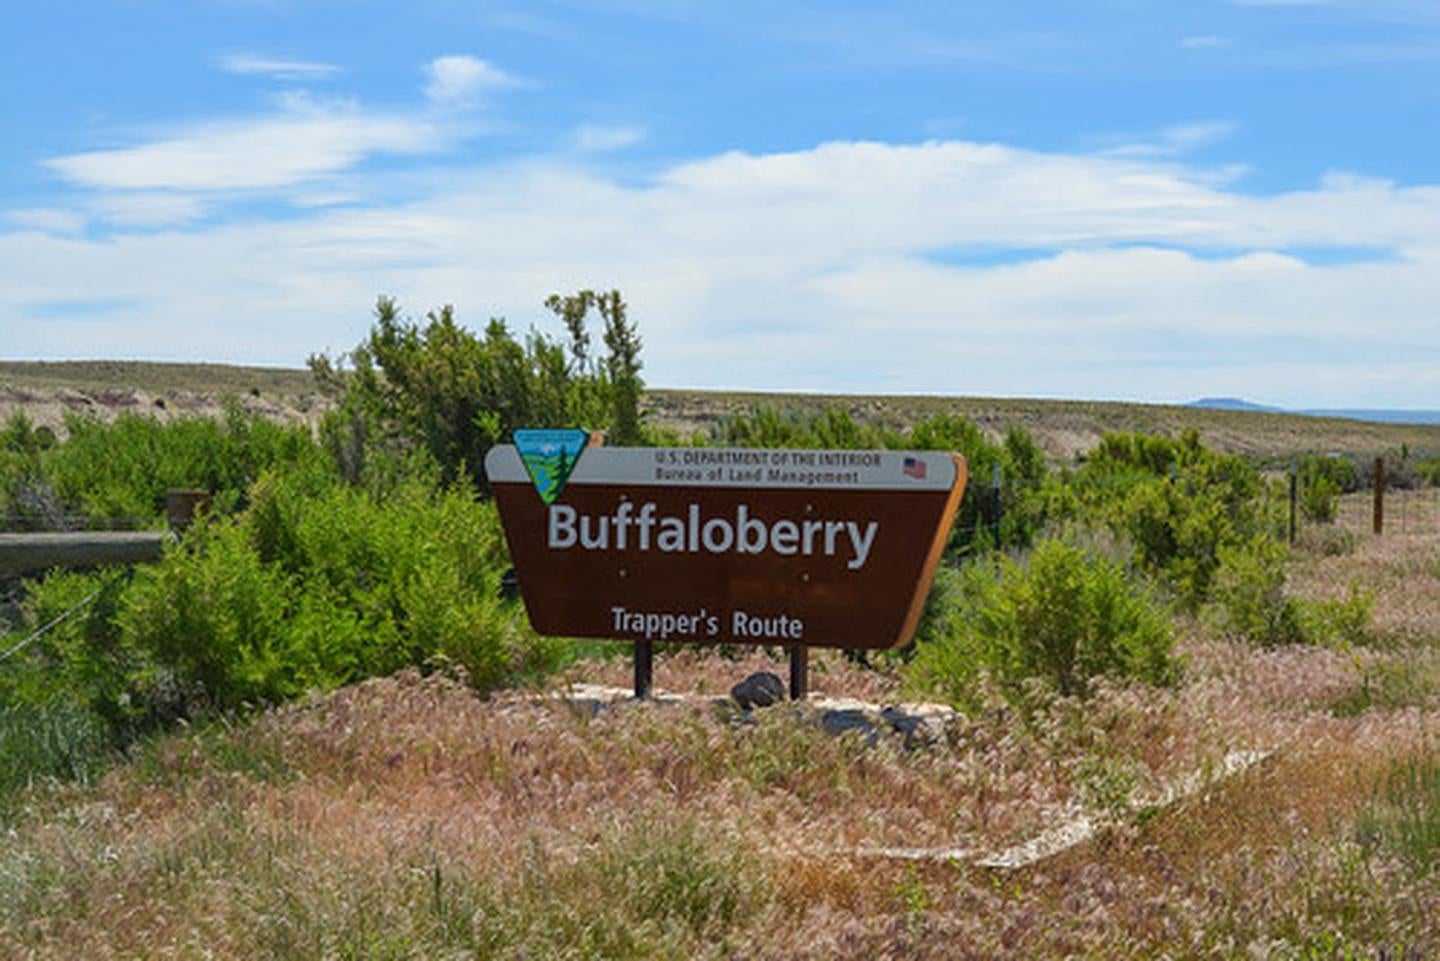 Buffaloberry Campground sign

Credit: